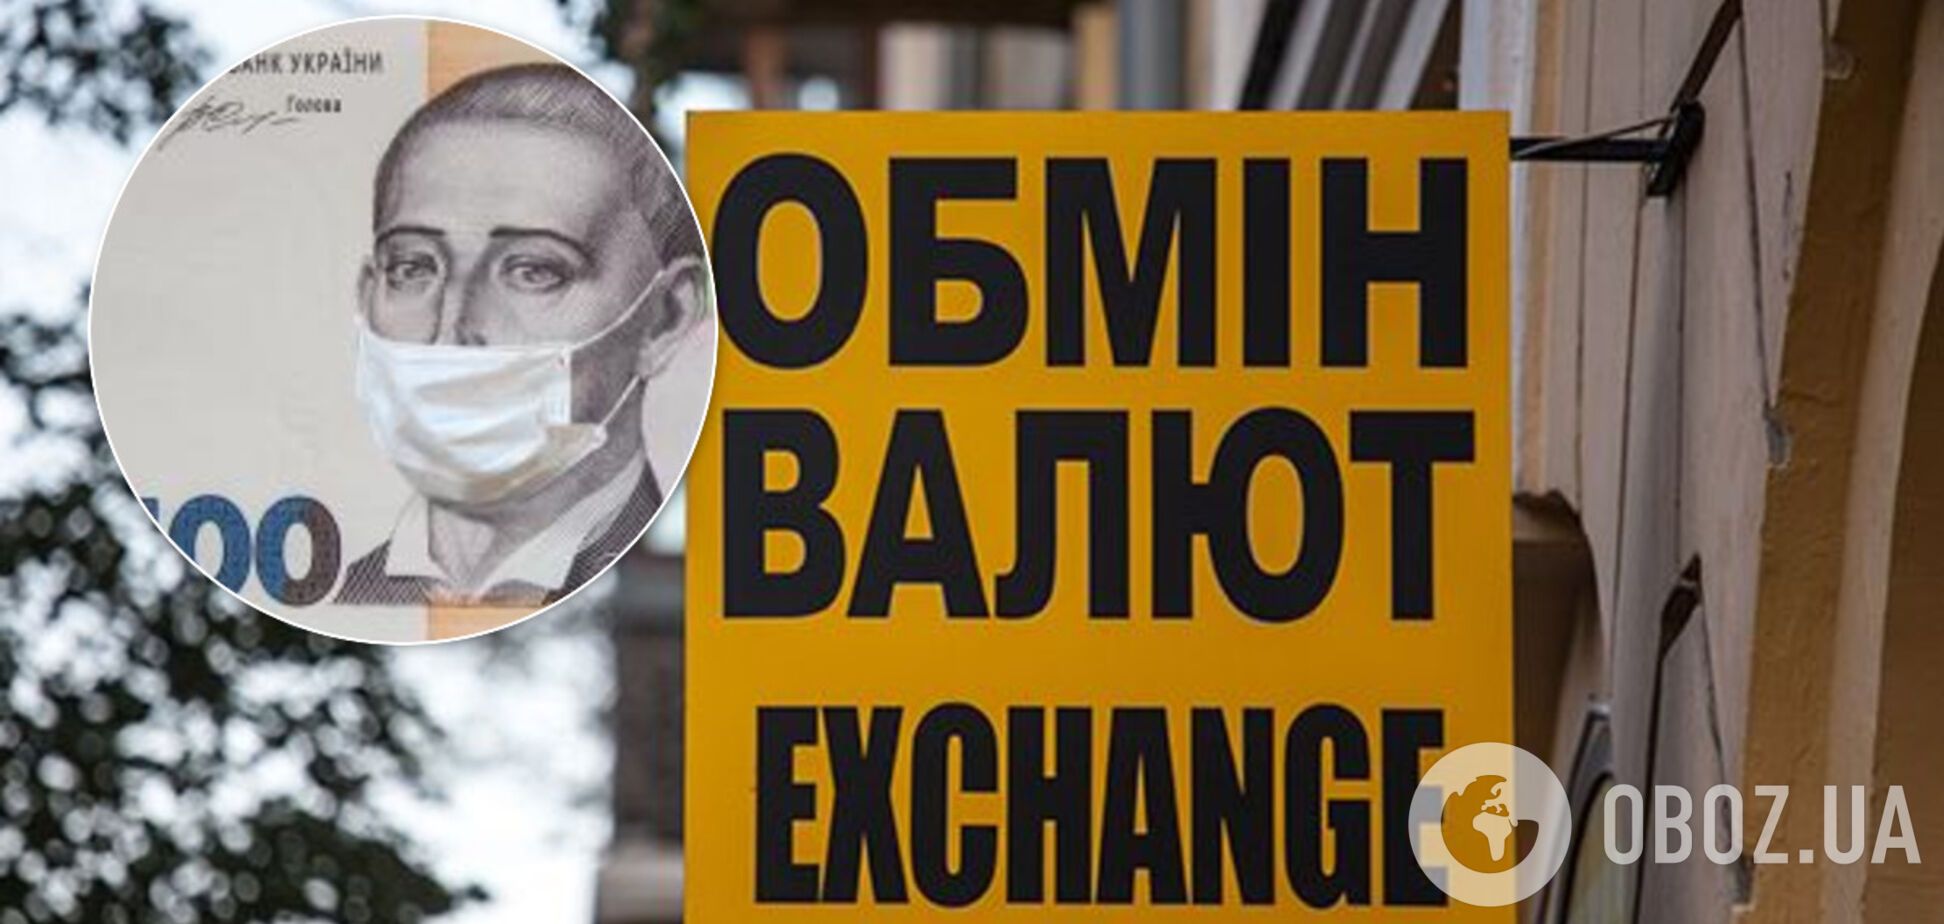 Доллар и евро в Украине подорожали: сколько стоят в банках и на черном рынке